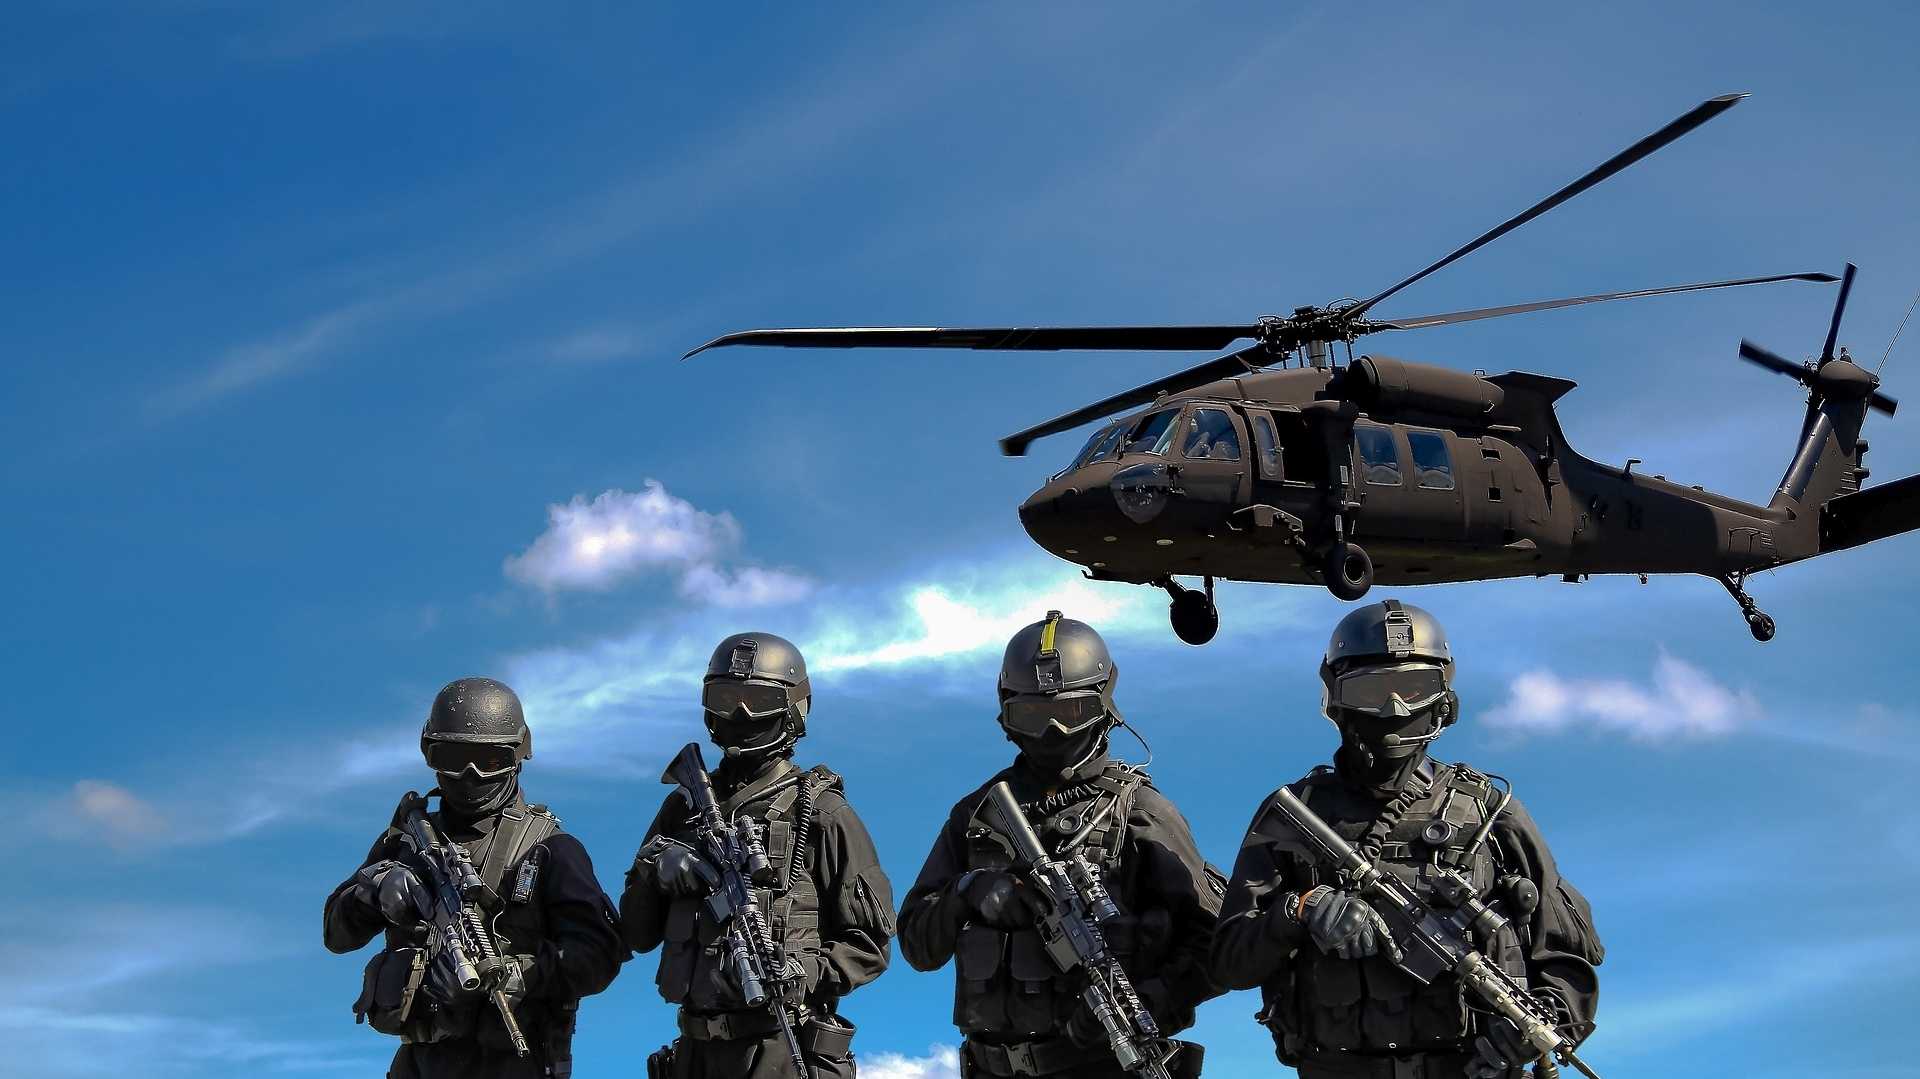 Bewaffnete Soldaten mit startendem Hubschrauber im Hintergrund